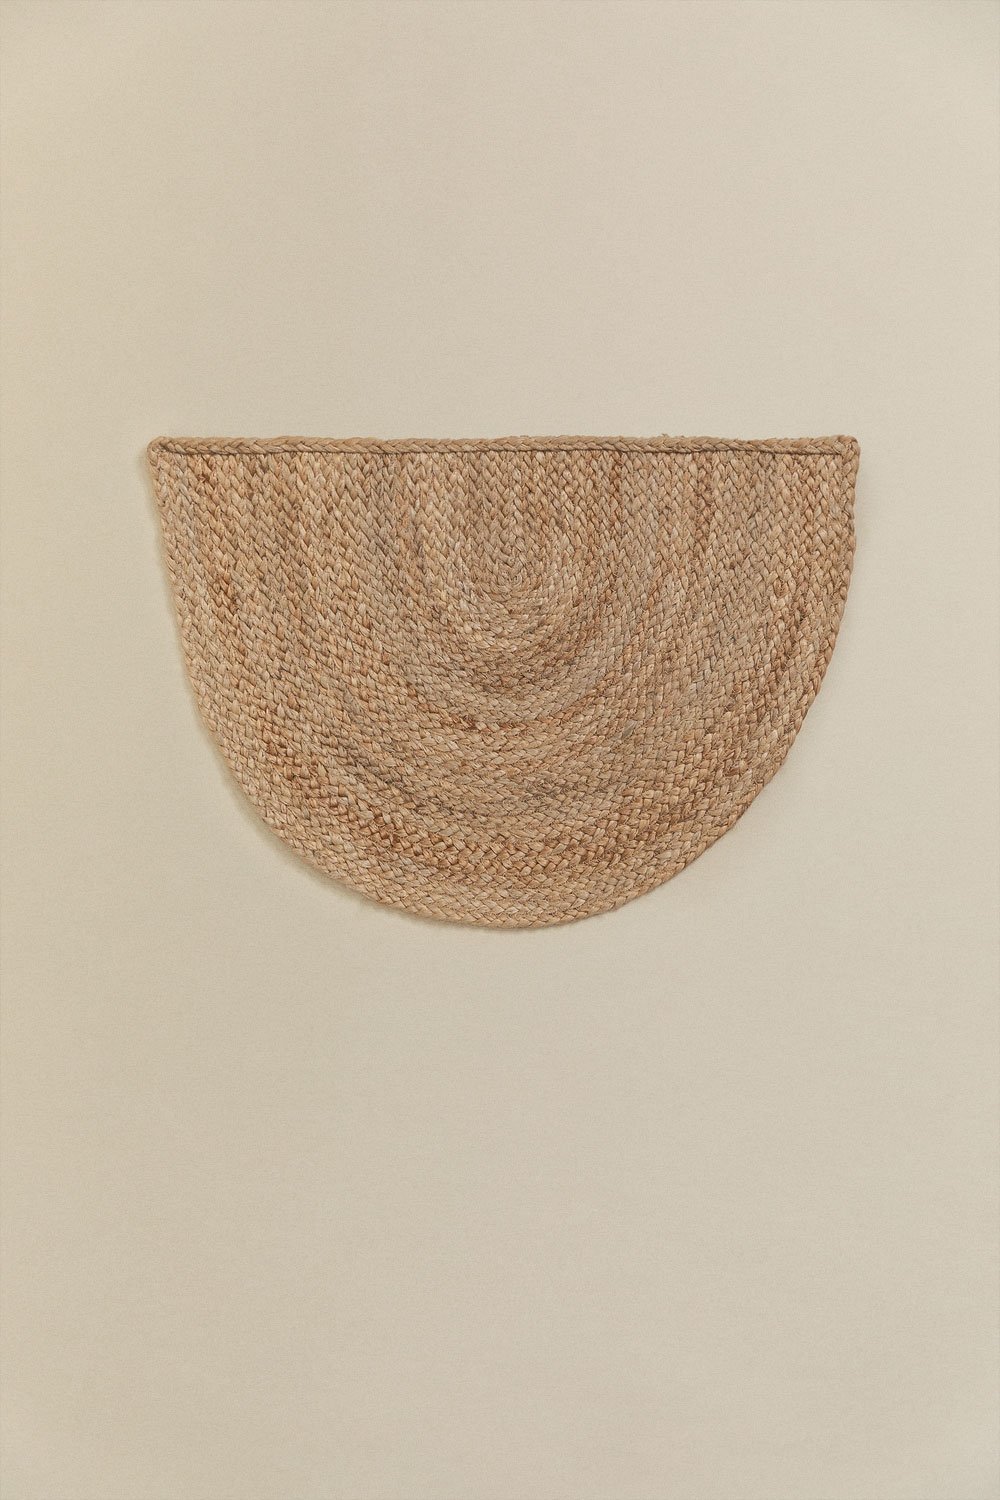 Zerbino Semicircolare in Juta (62x40 cm) Fondreset, immagine della galleria 1